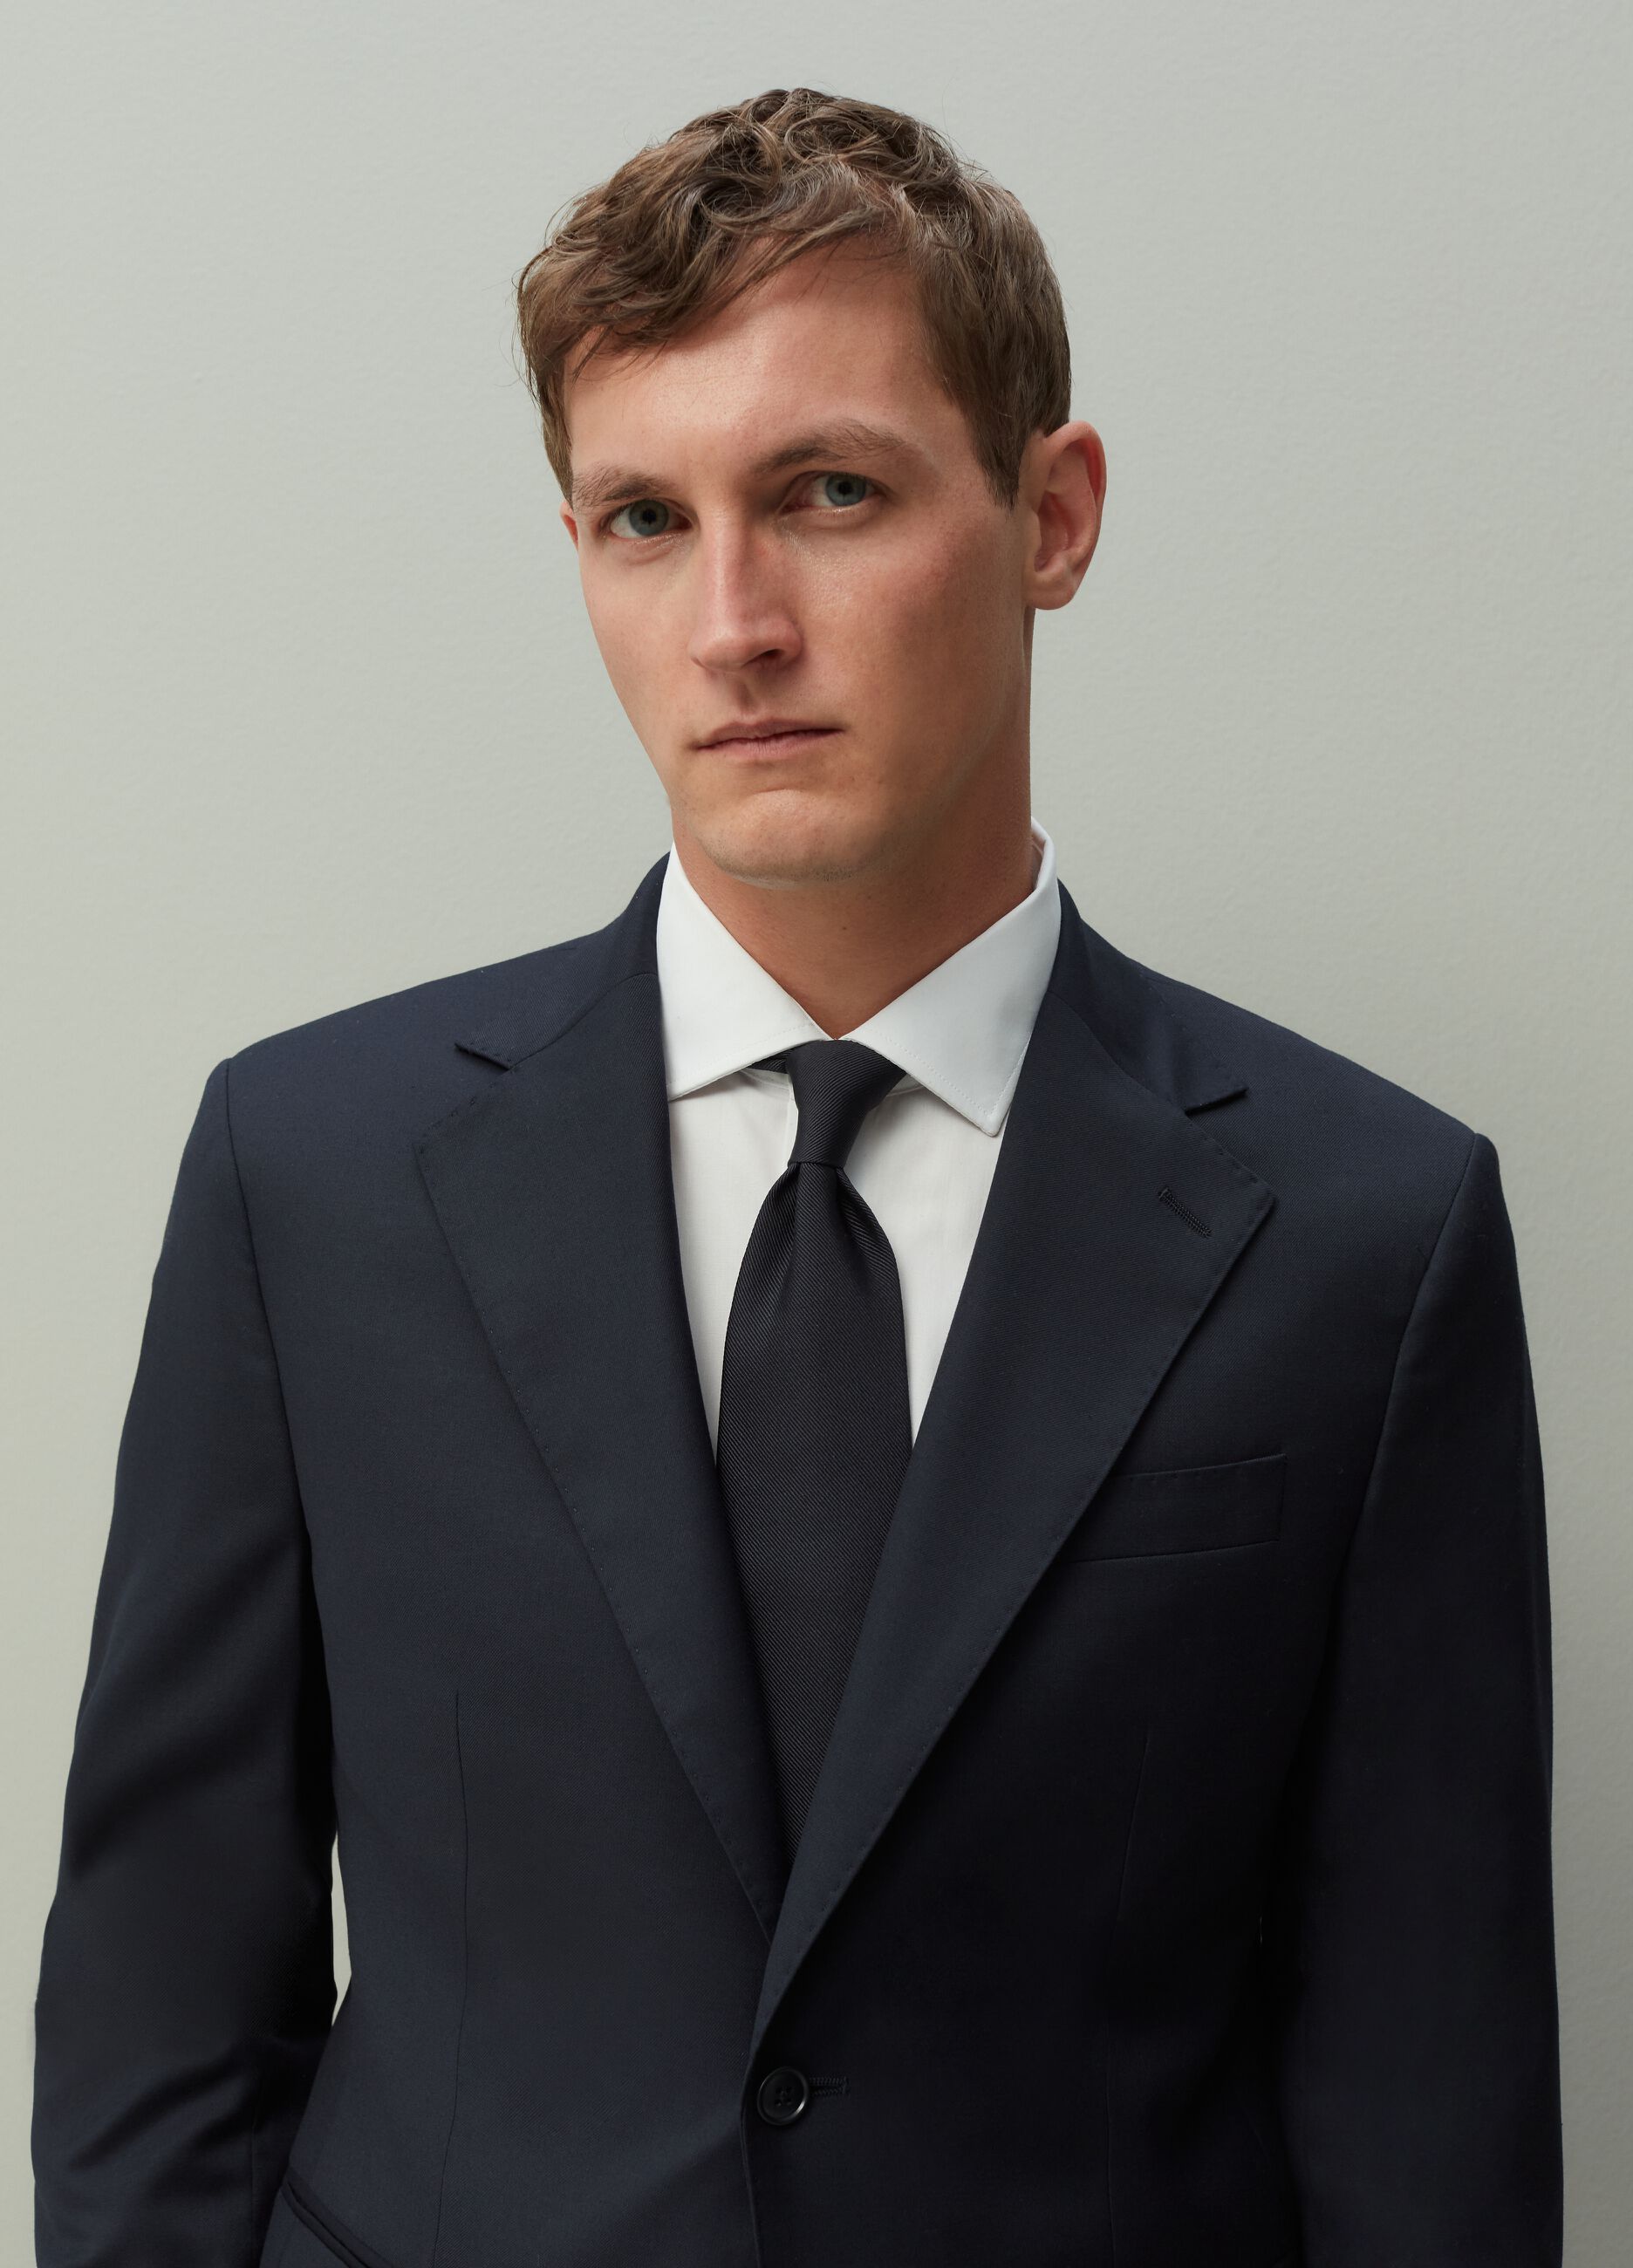 Regular-fit navy blue formal blazer